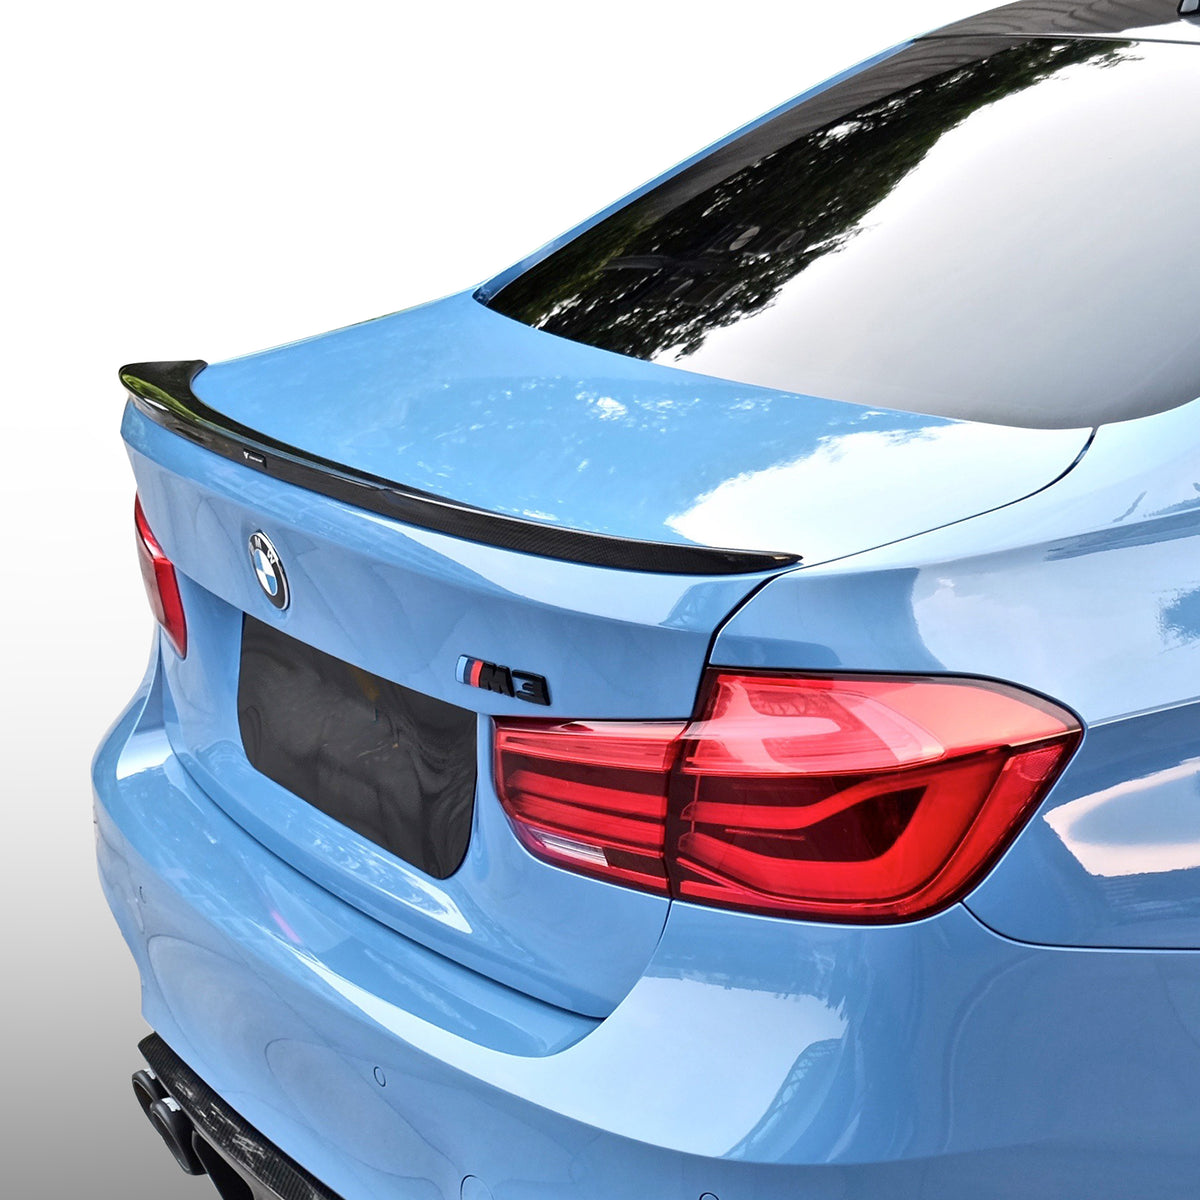 BMW F8X M3 EVO Aero Decklid Spoiler Carbon Fiber (F80 M3 Only) - Vorsteiner Wheels  - Aero - [tags]